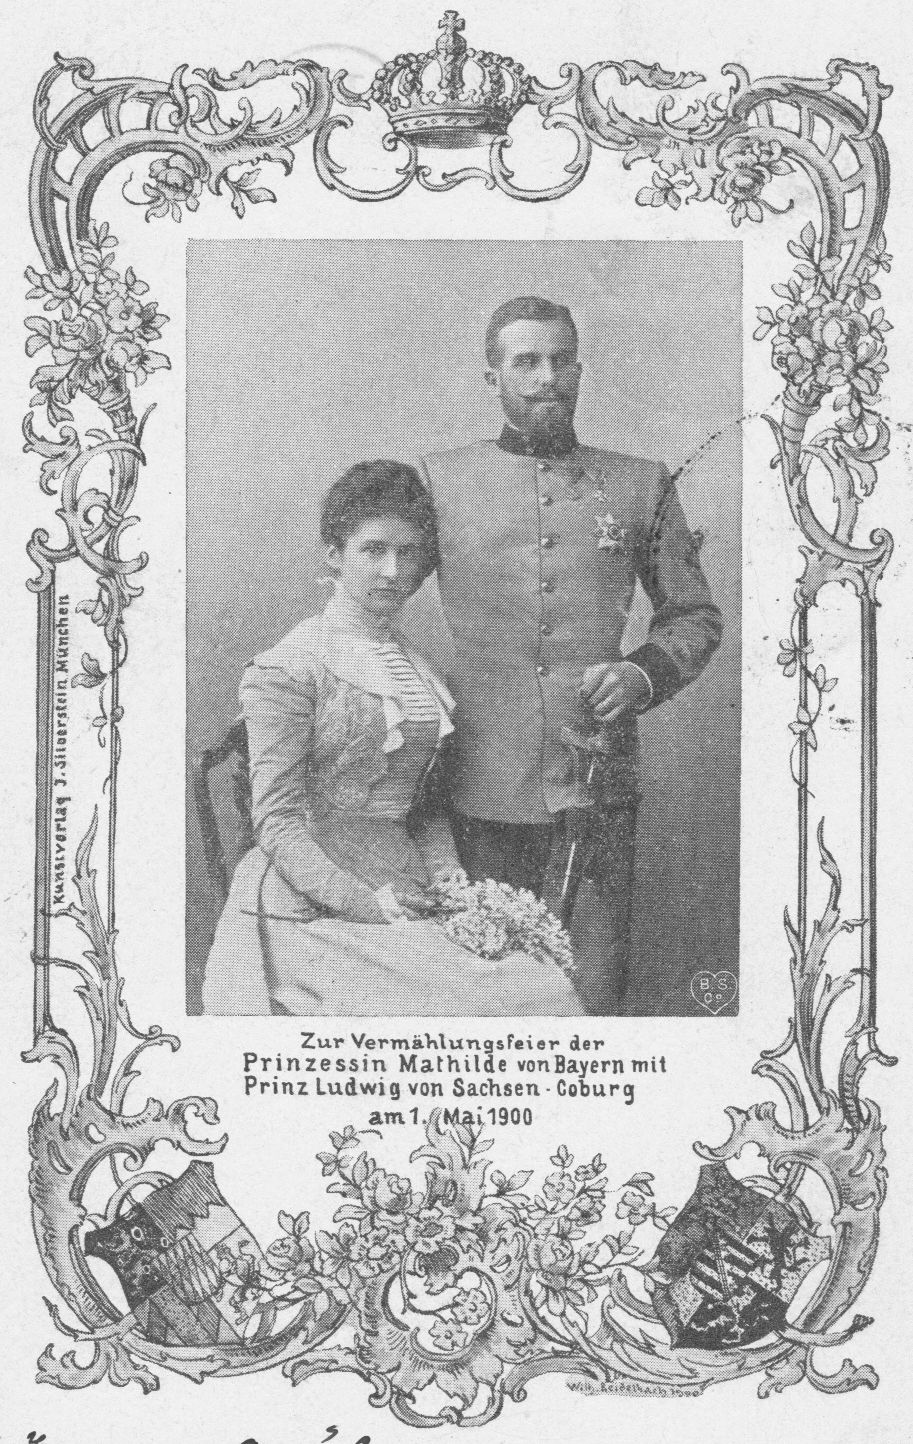 Ludwig Gaston Prinz von Sachsen-Coburg und Gotha mit seiner ersten Frau Mathilde Prinzessin von Bayern